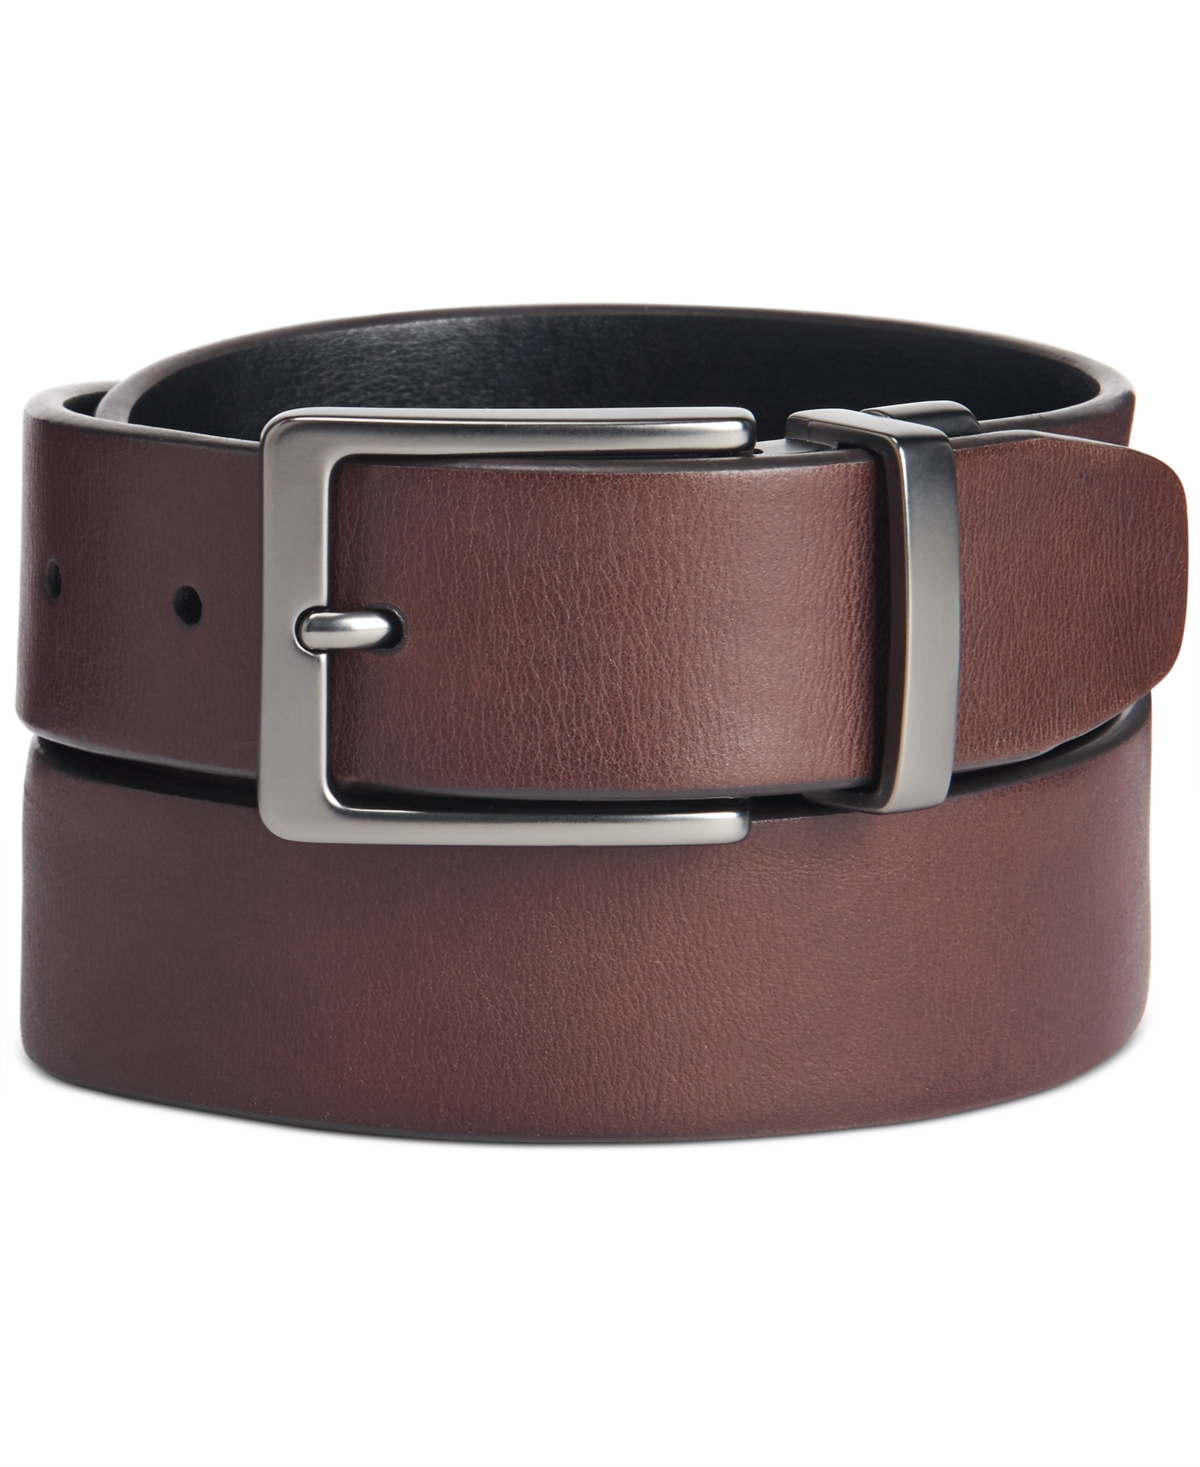 Men's Faux Leather Antique-Look Reversible Belt - Brown